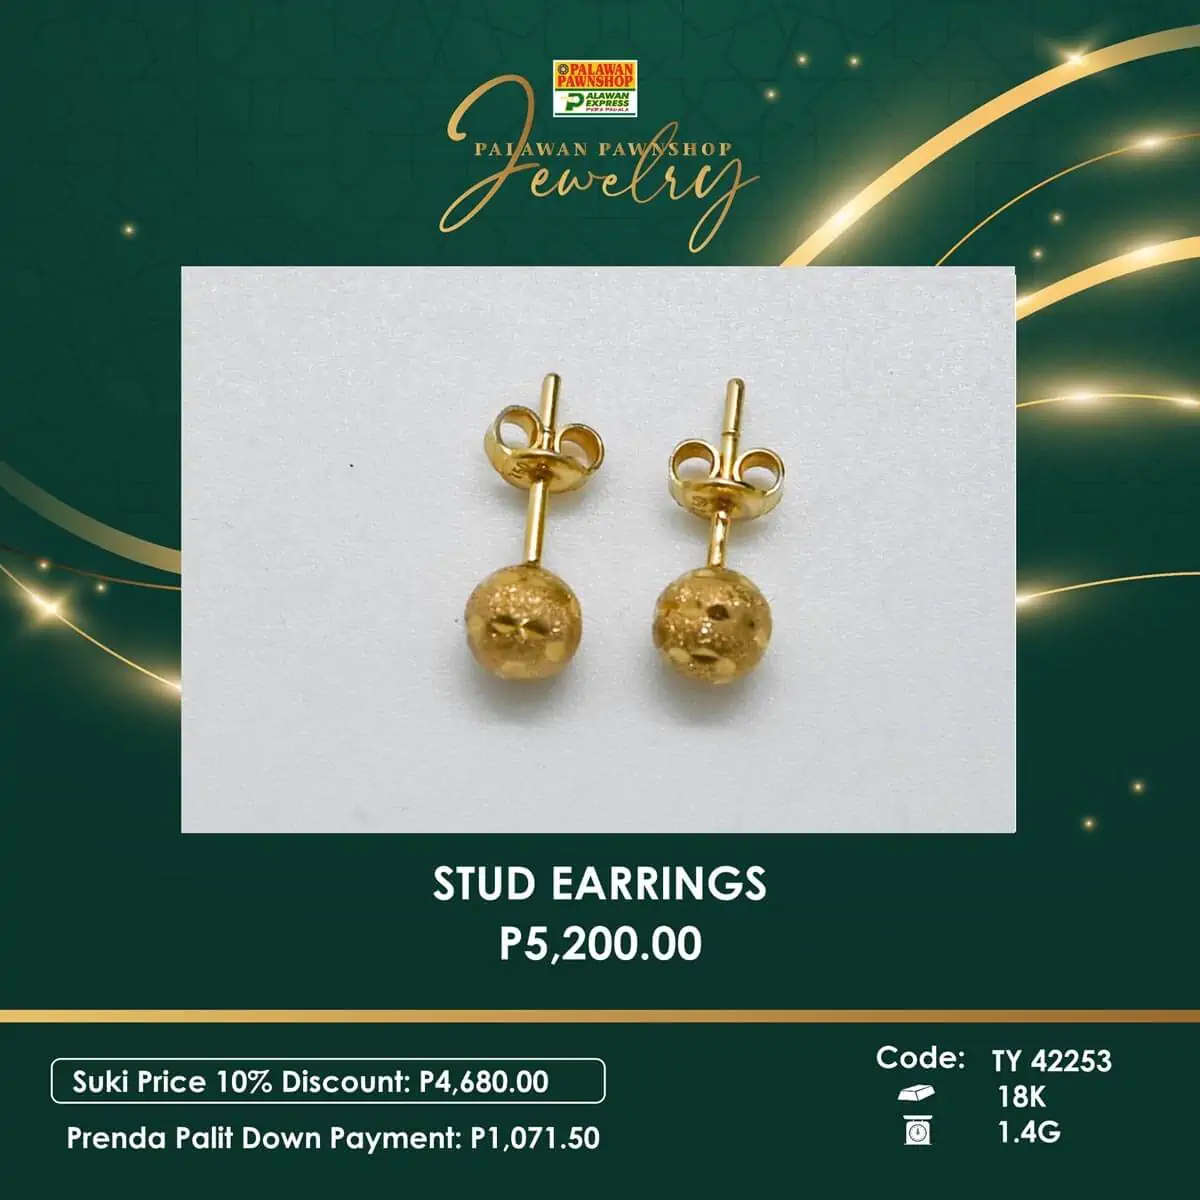 palawan pawnshop jewelry earrings